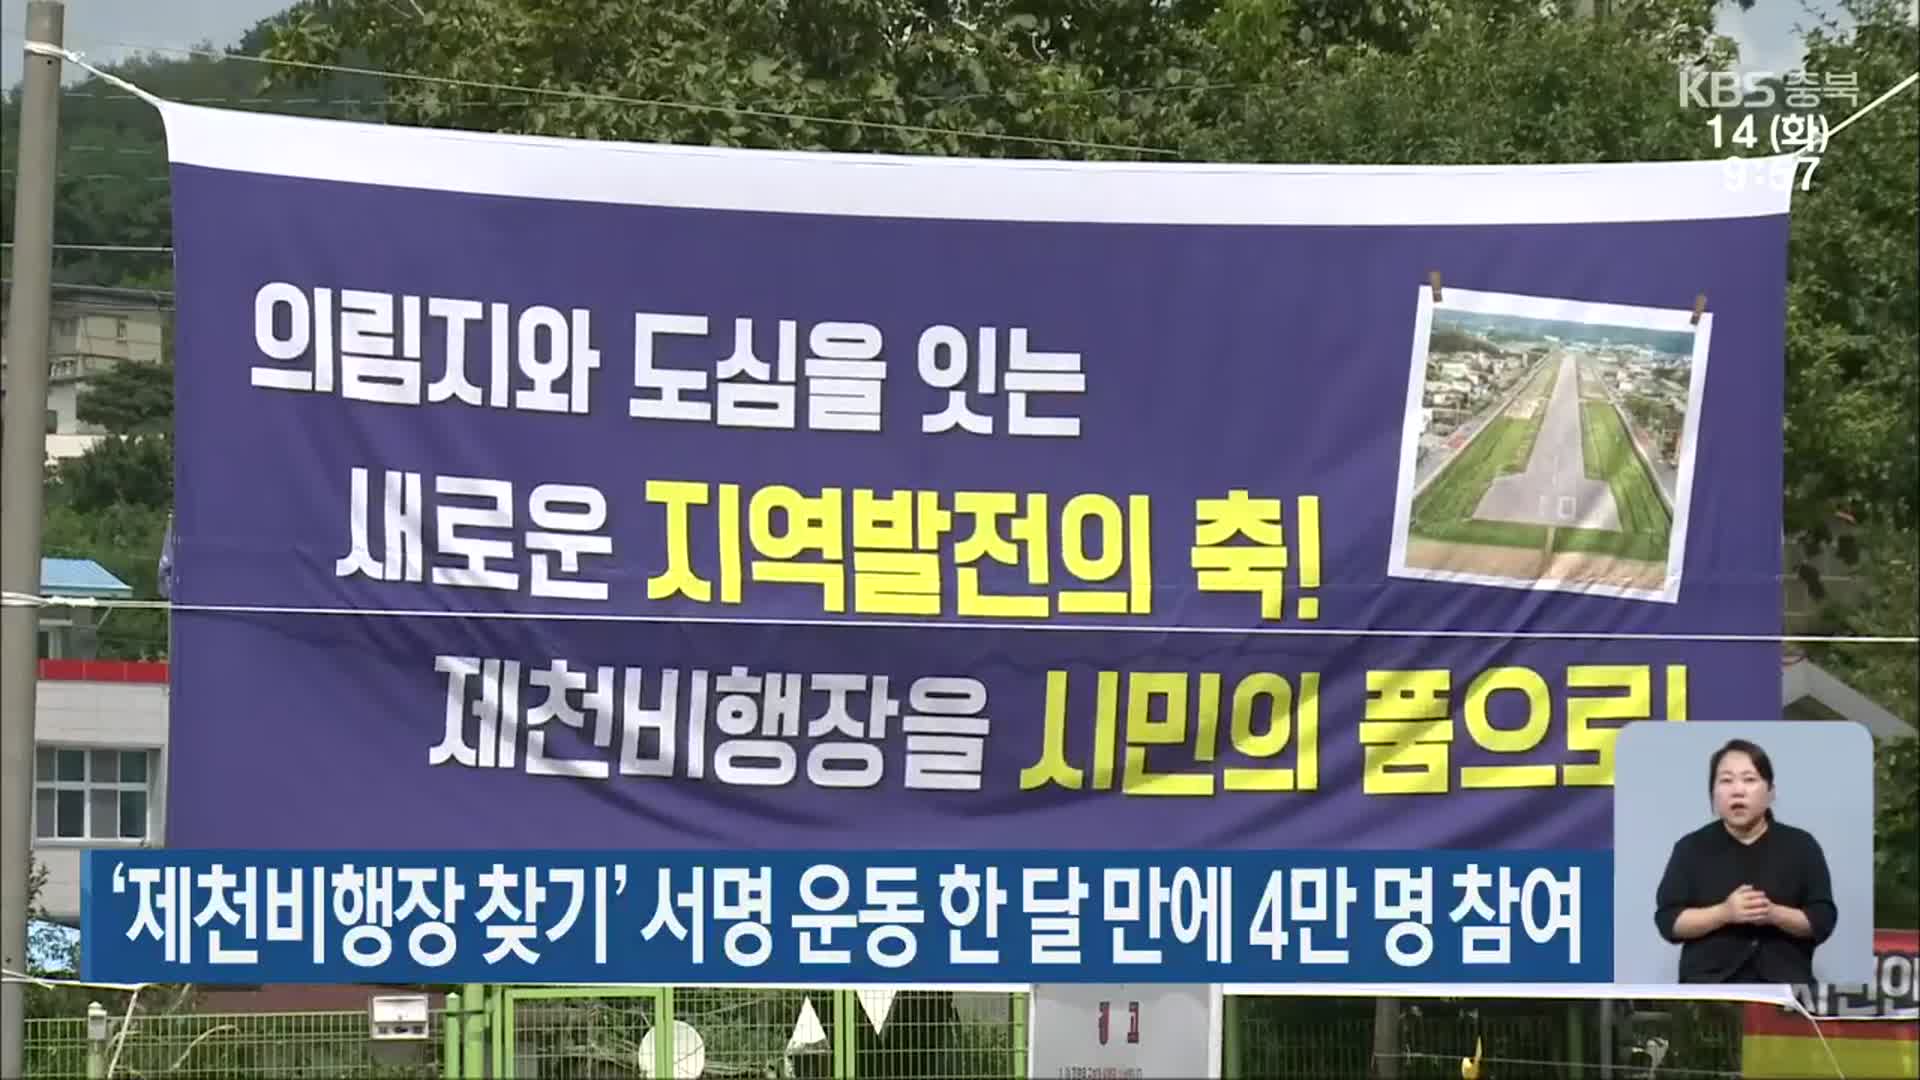 ‘제천비행장 찾기’ 서명 운동 한 달 만에 4만 명 참여